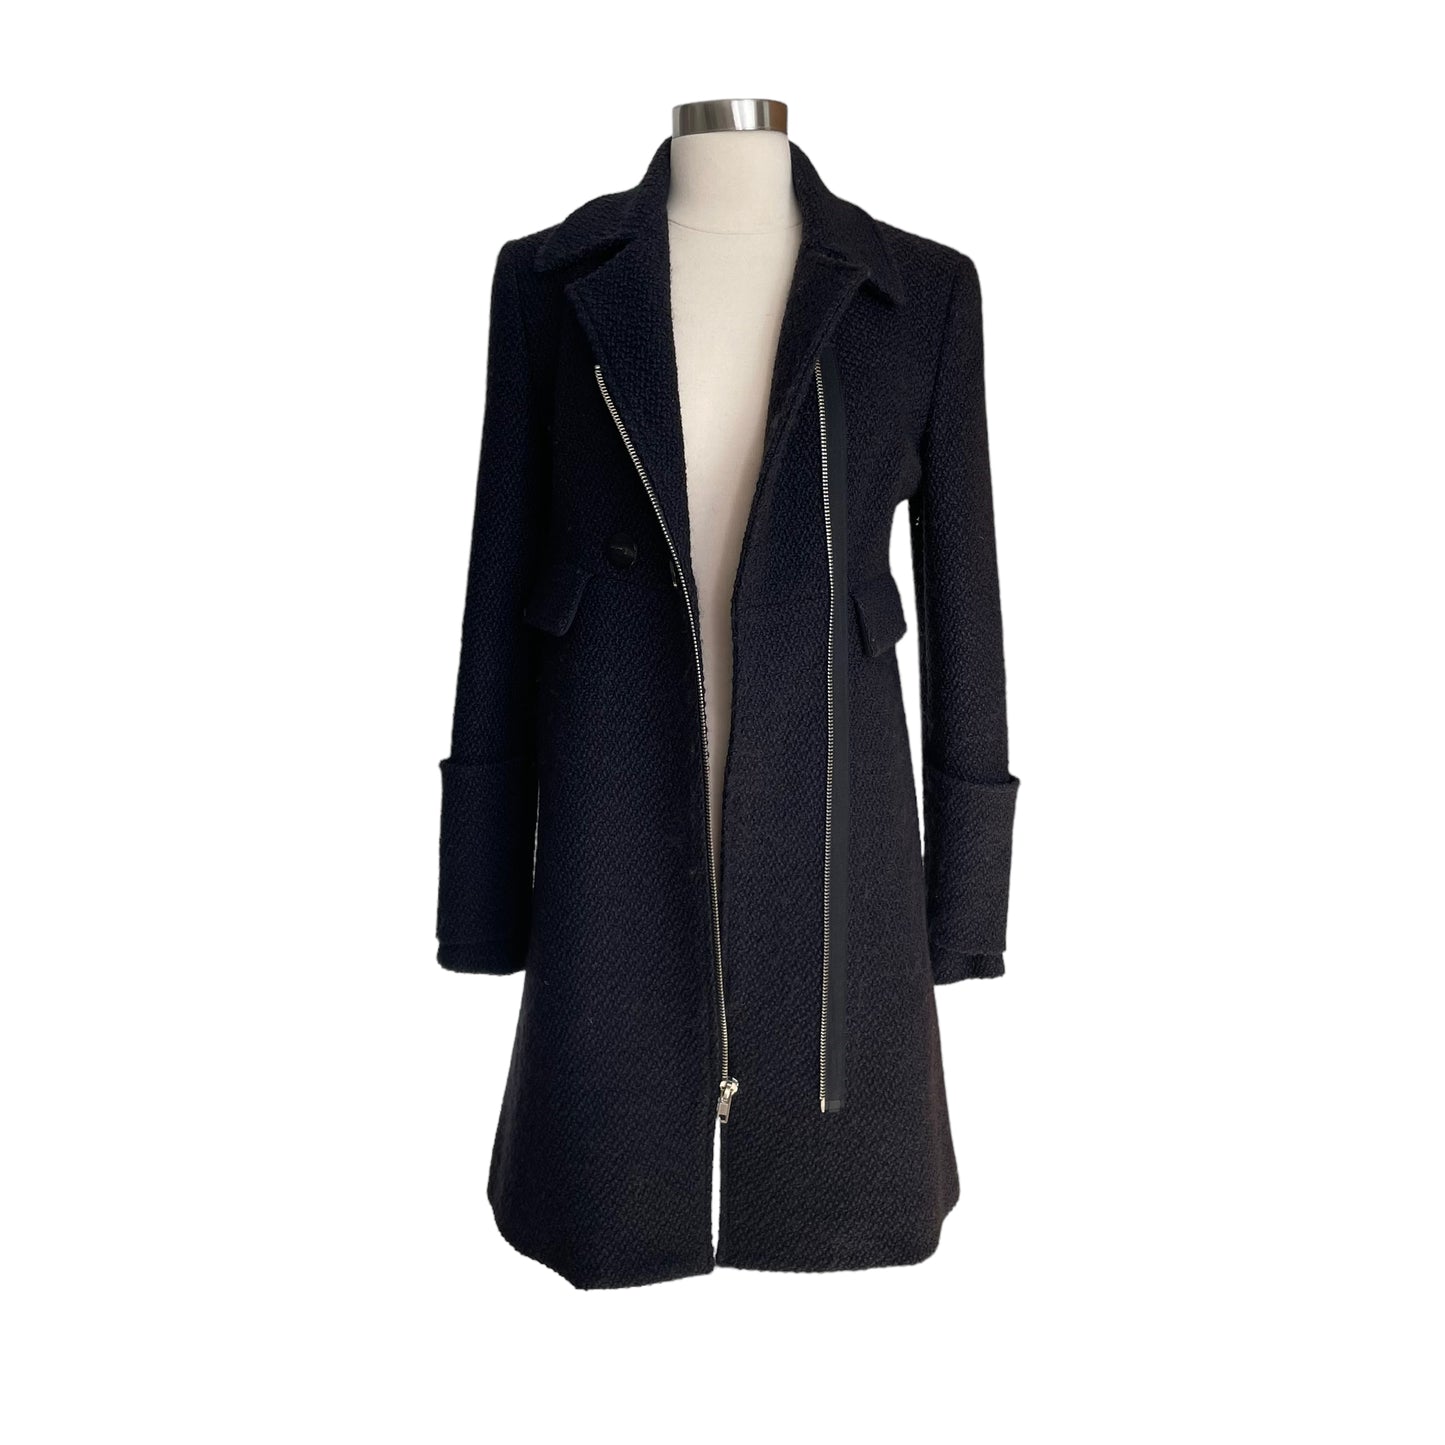 Black Tweed Coat - L